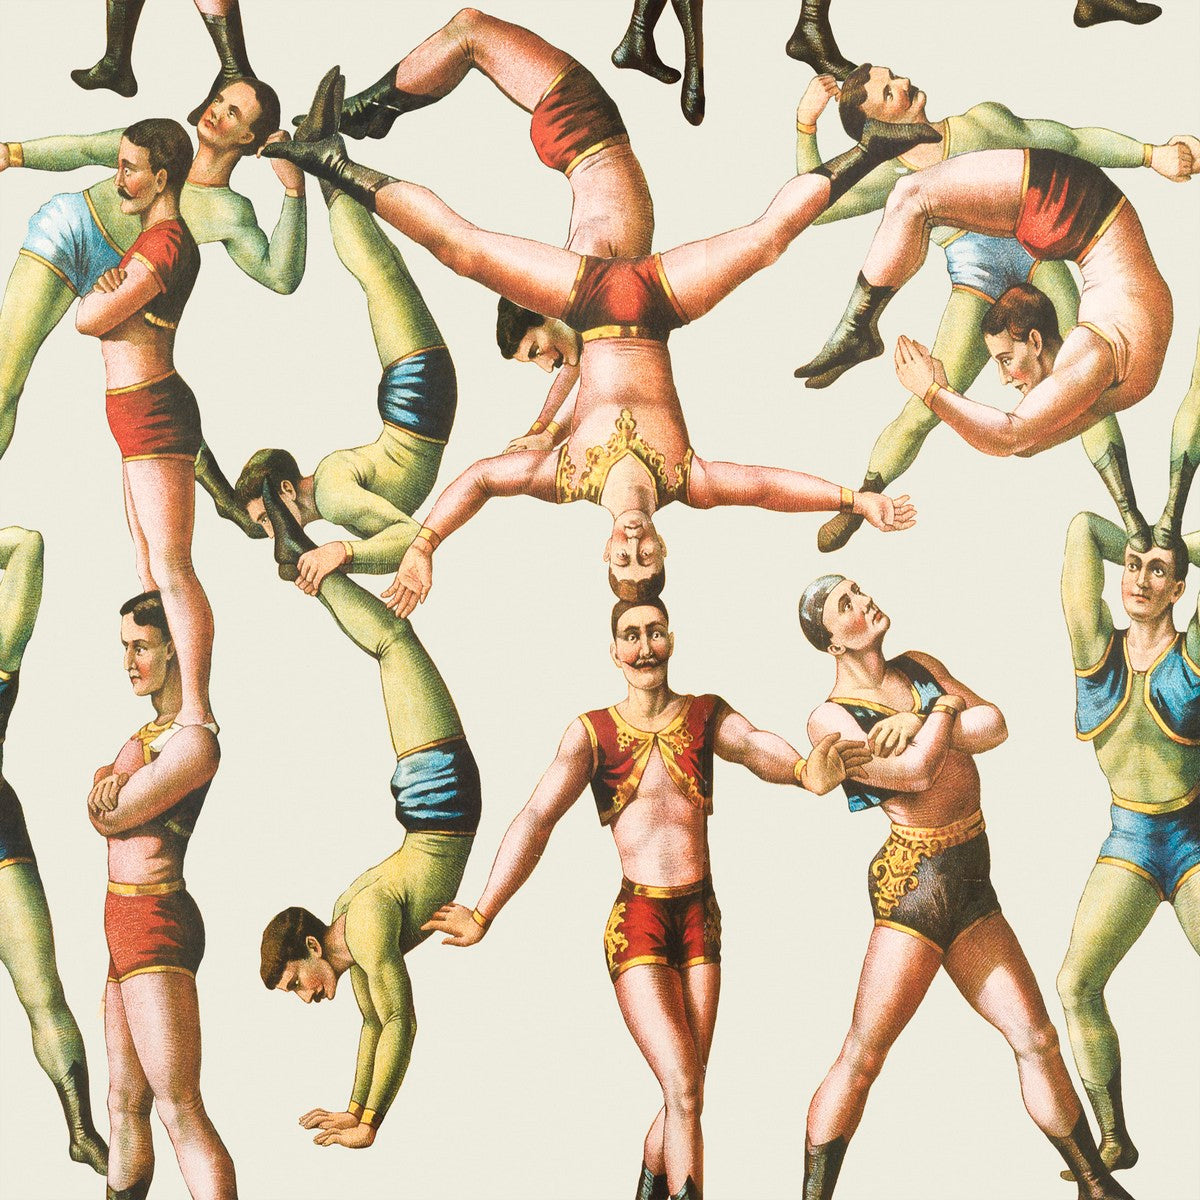 Le papier peint des acrobates par Mindthegap